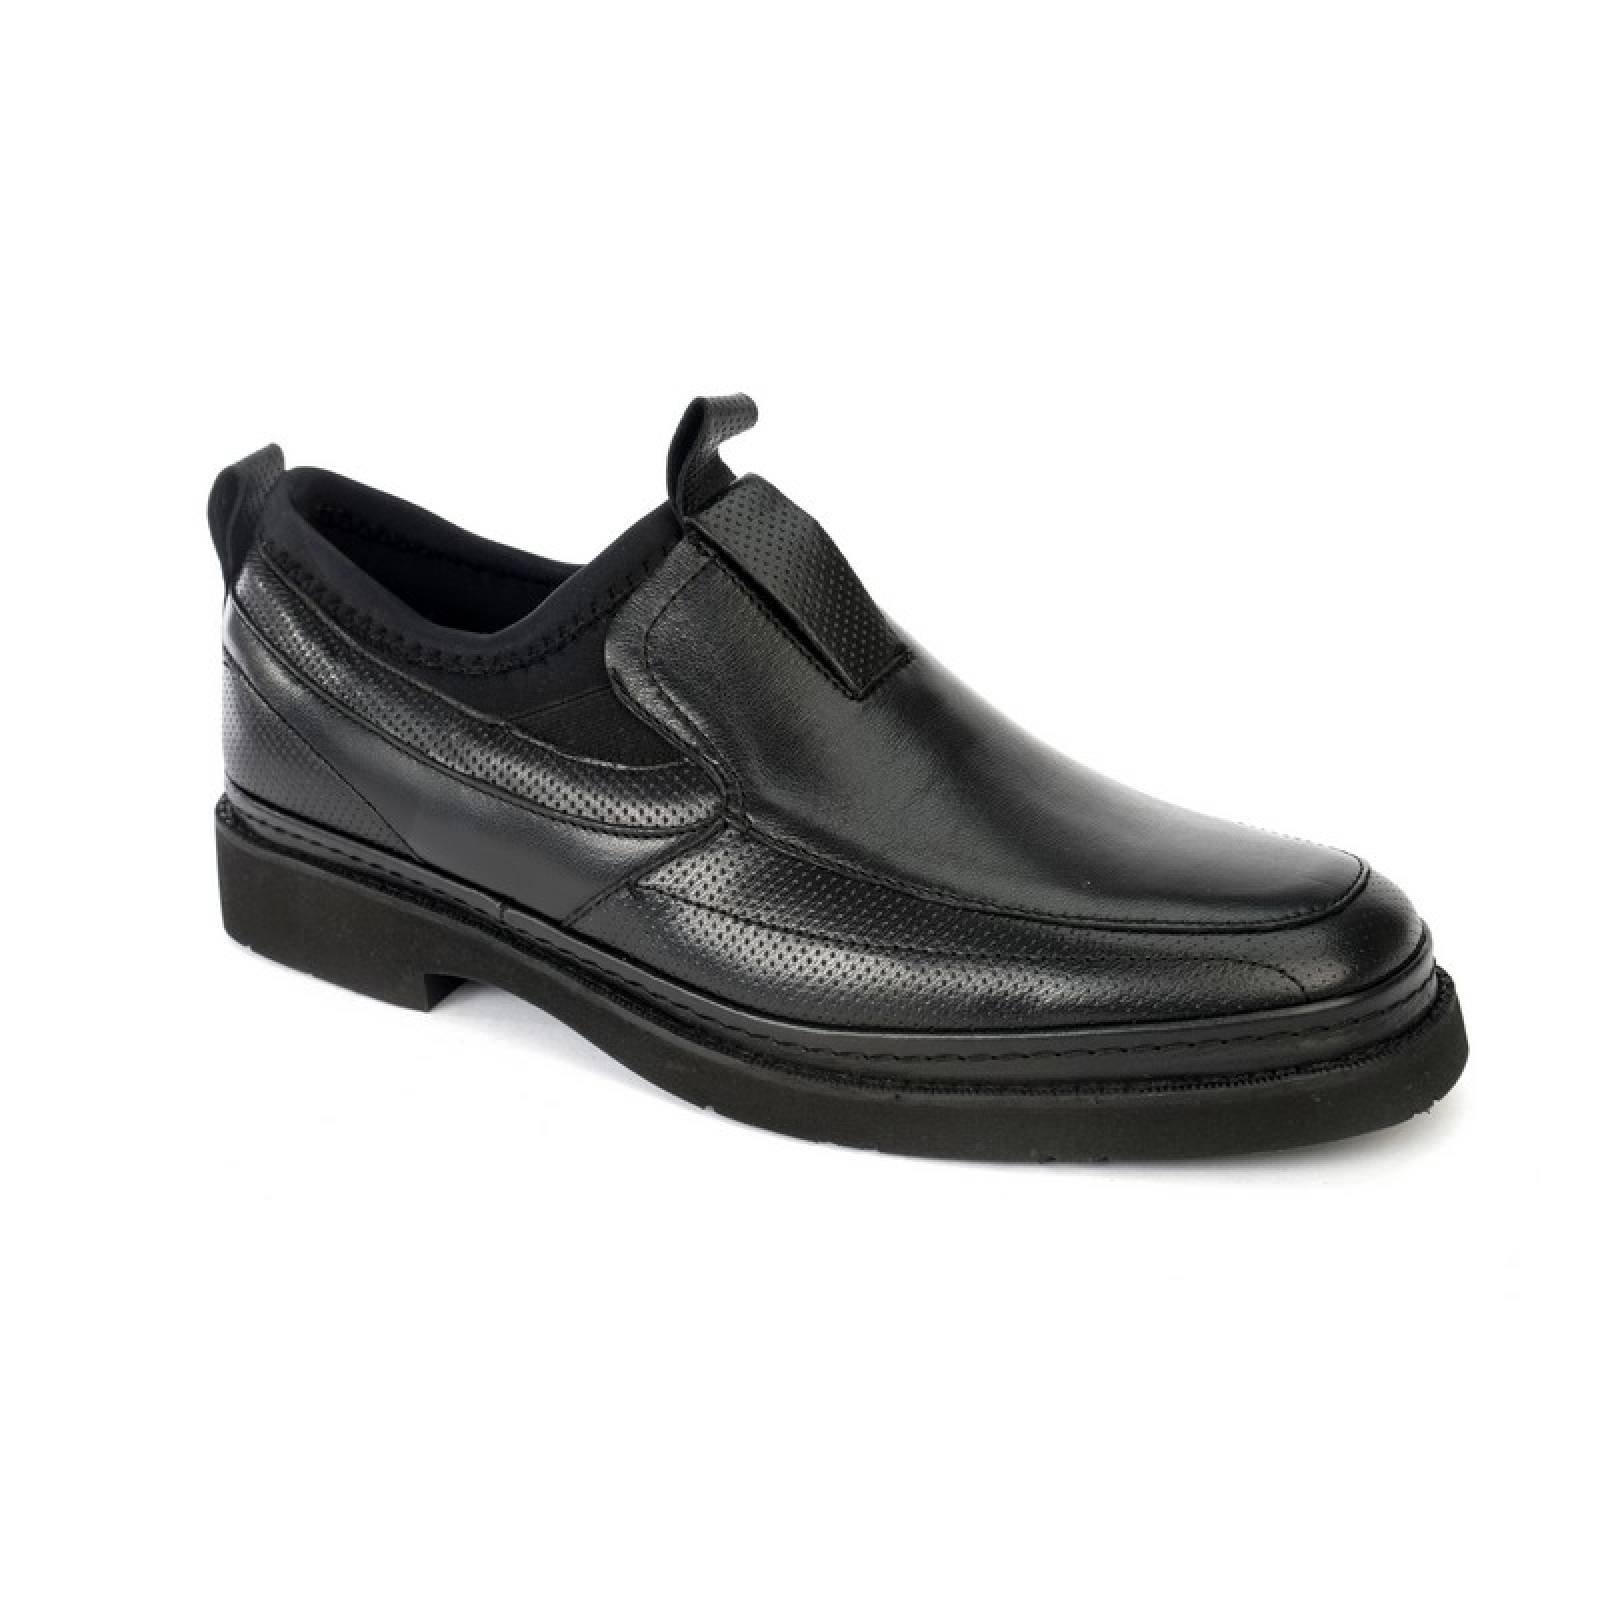 Jarking - Zapato Formal Negro con Ajuste de Licra y Amplitud Especial para Caballero